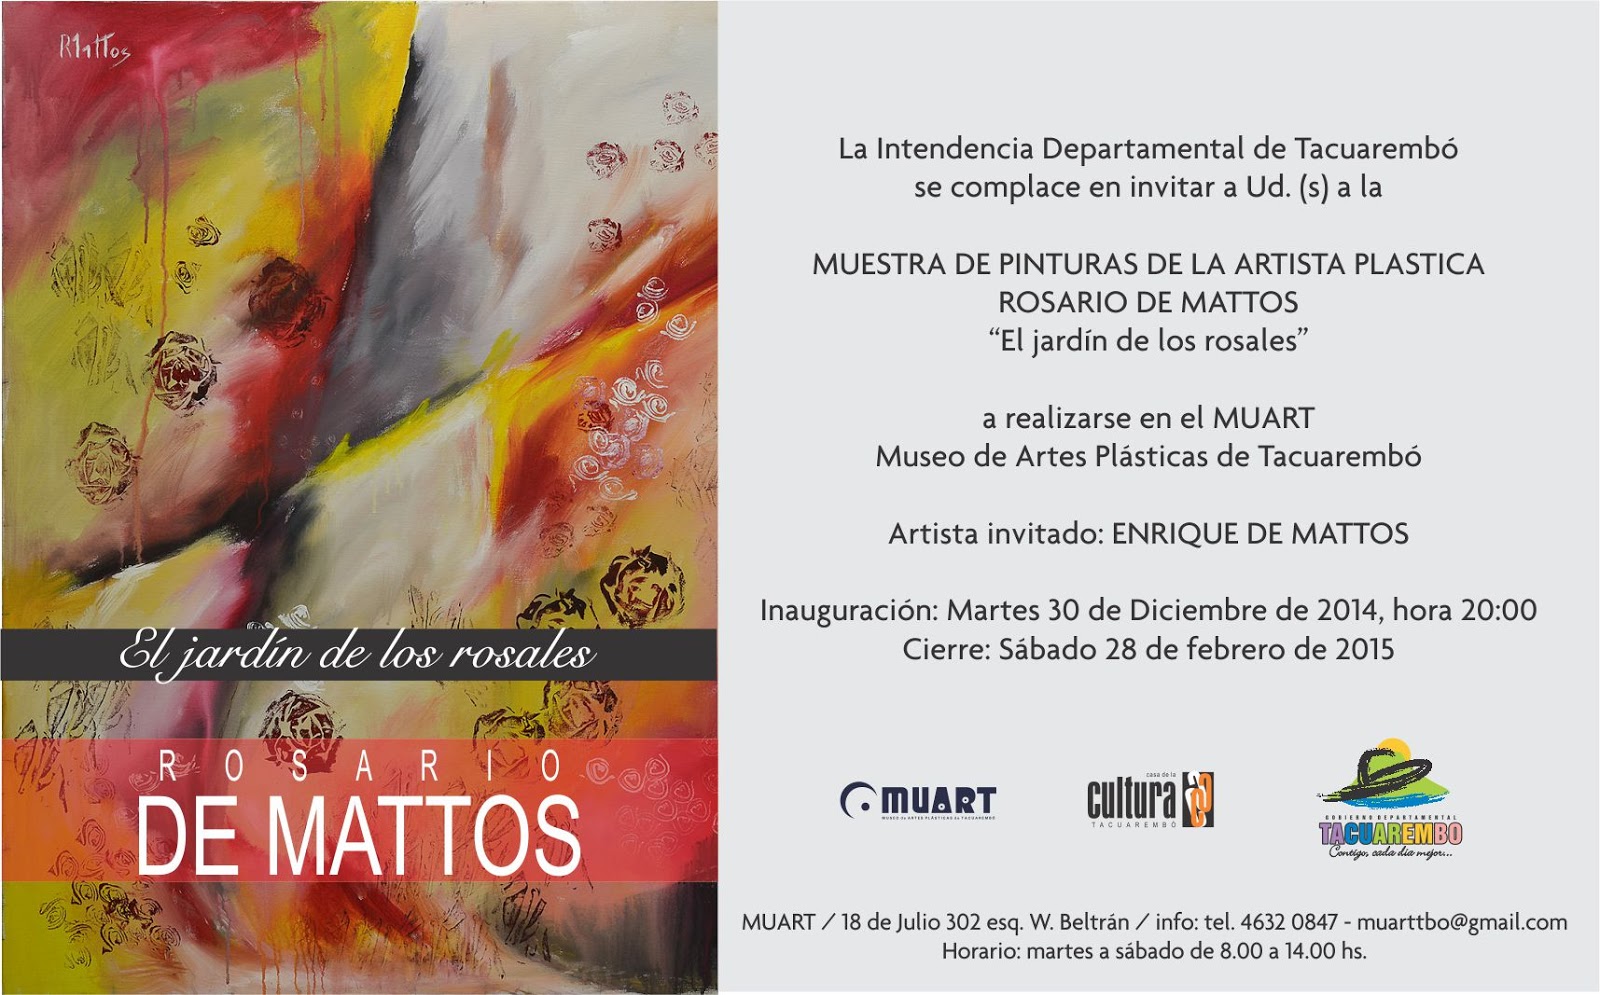 Tacuarembó: Muestra de Pinturas de Rosario de Mattos, titulada “El Jardín de los Rosales” en el MUART